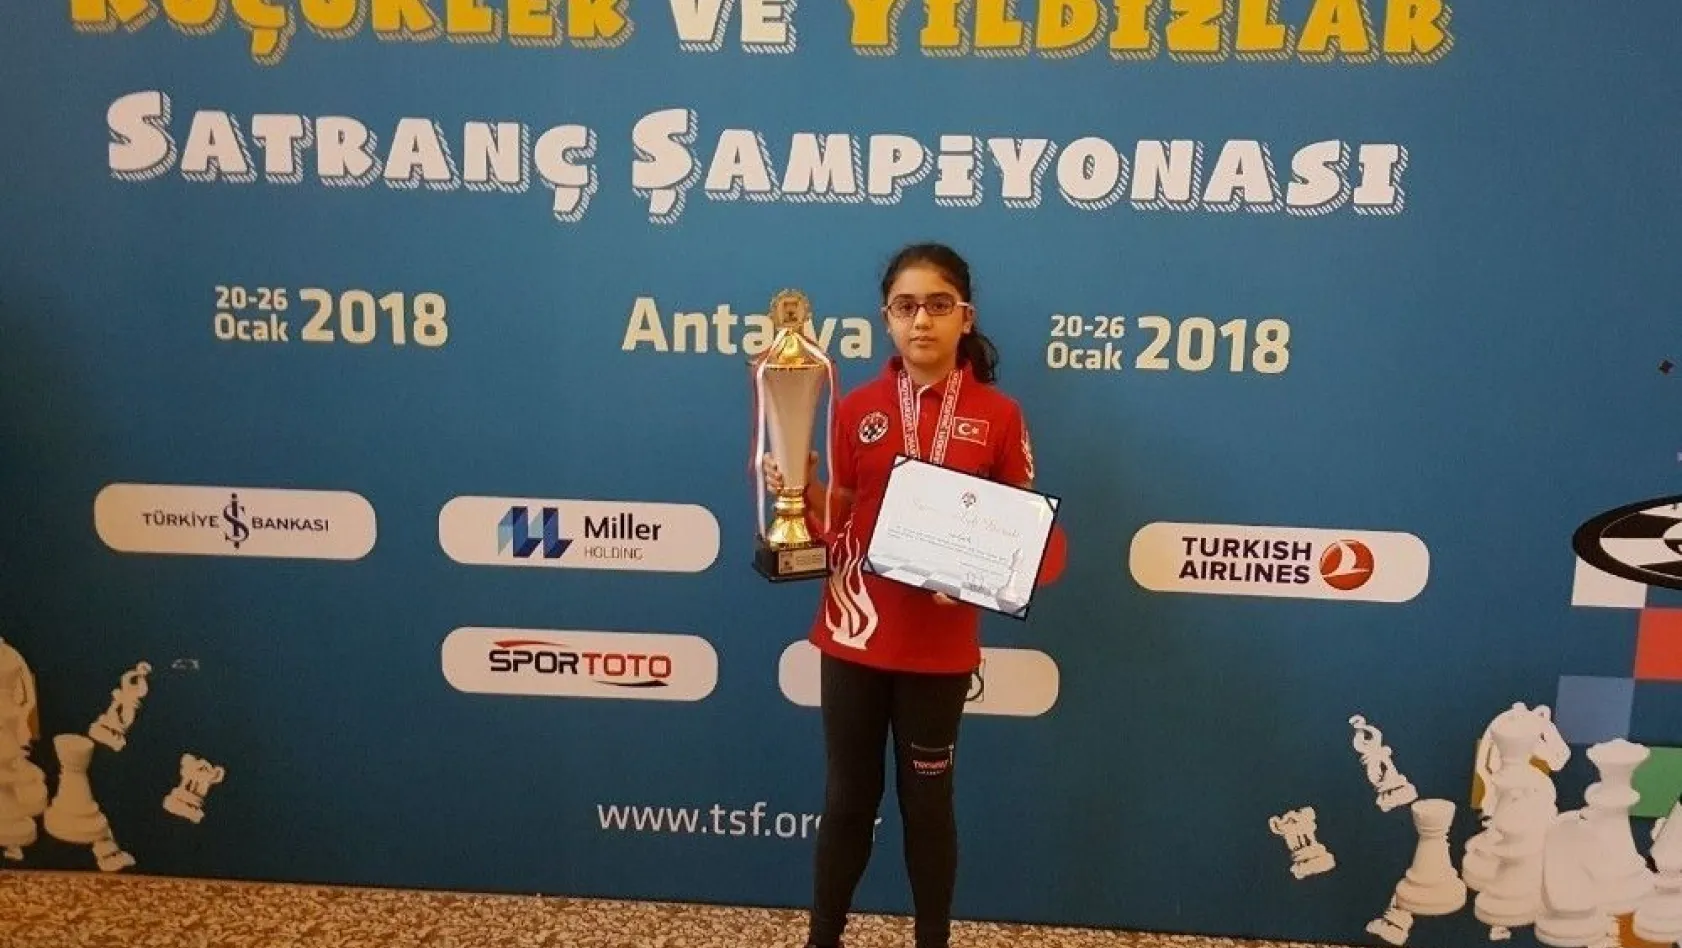 Milli Satranç Sporcusu Türkiye şampiyonu oldu
